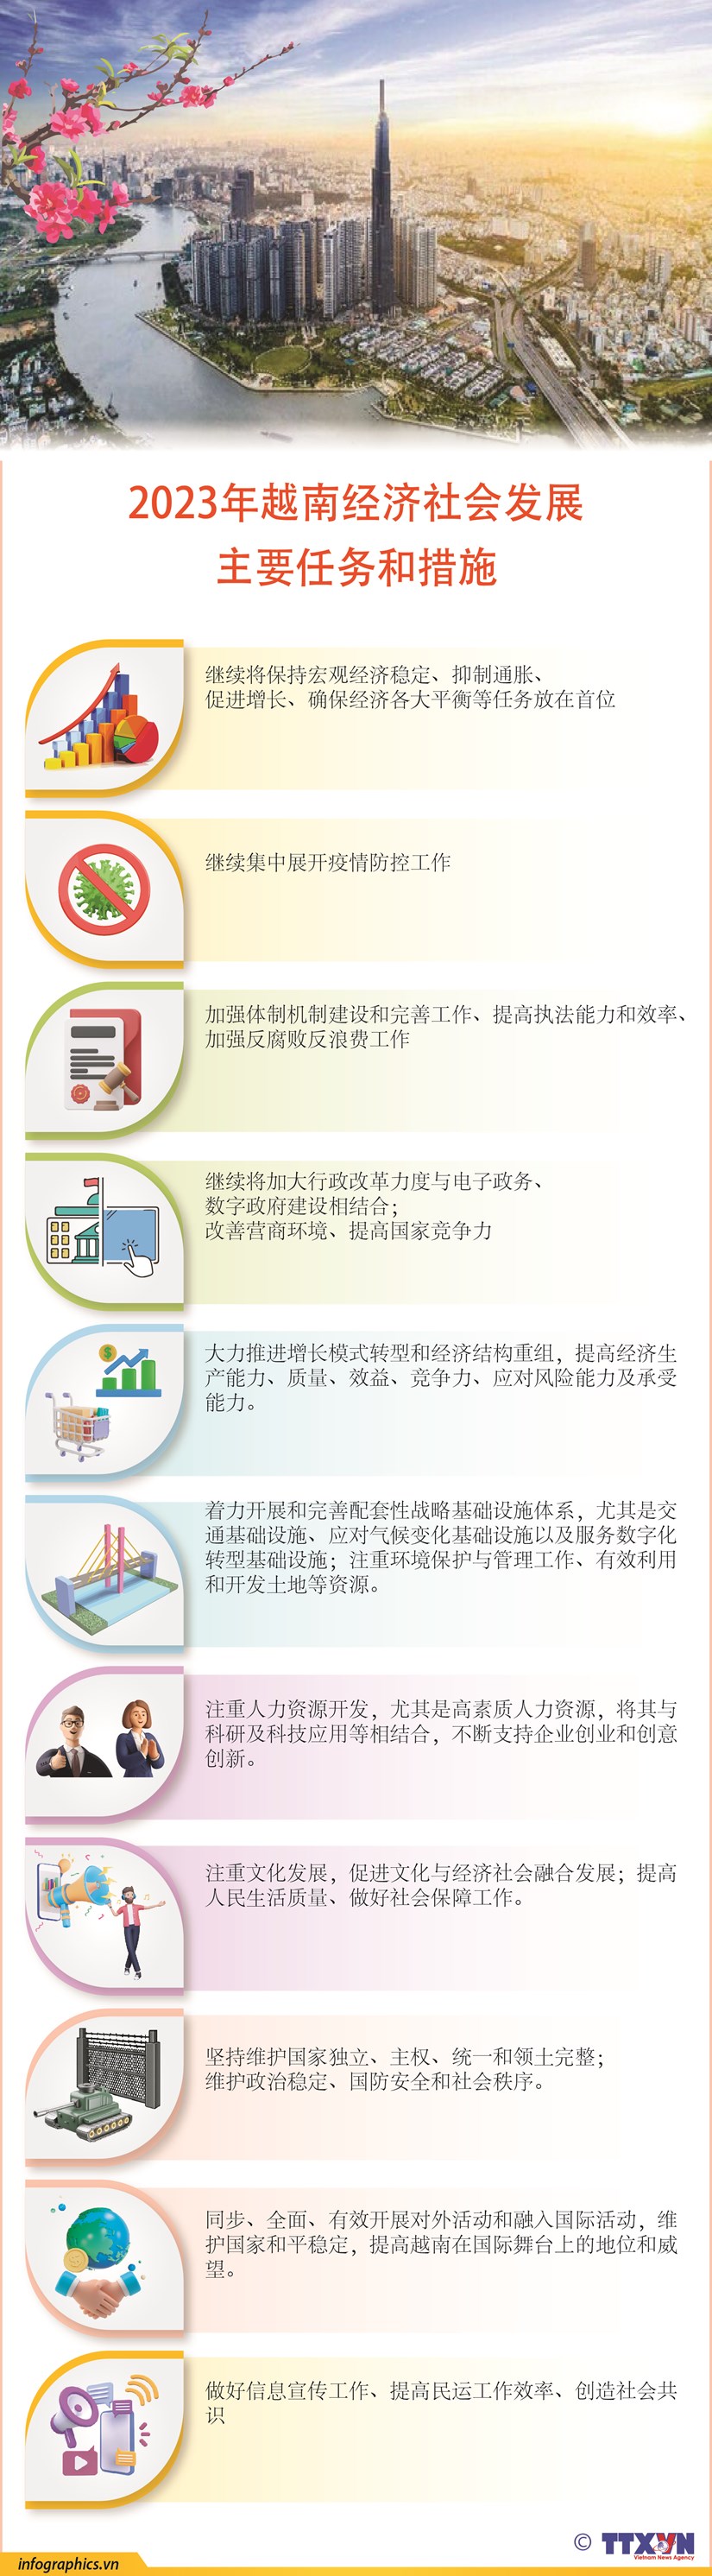 图表新闻：2023年越南经济社会发展 主要任务和措施 hinh anh 1